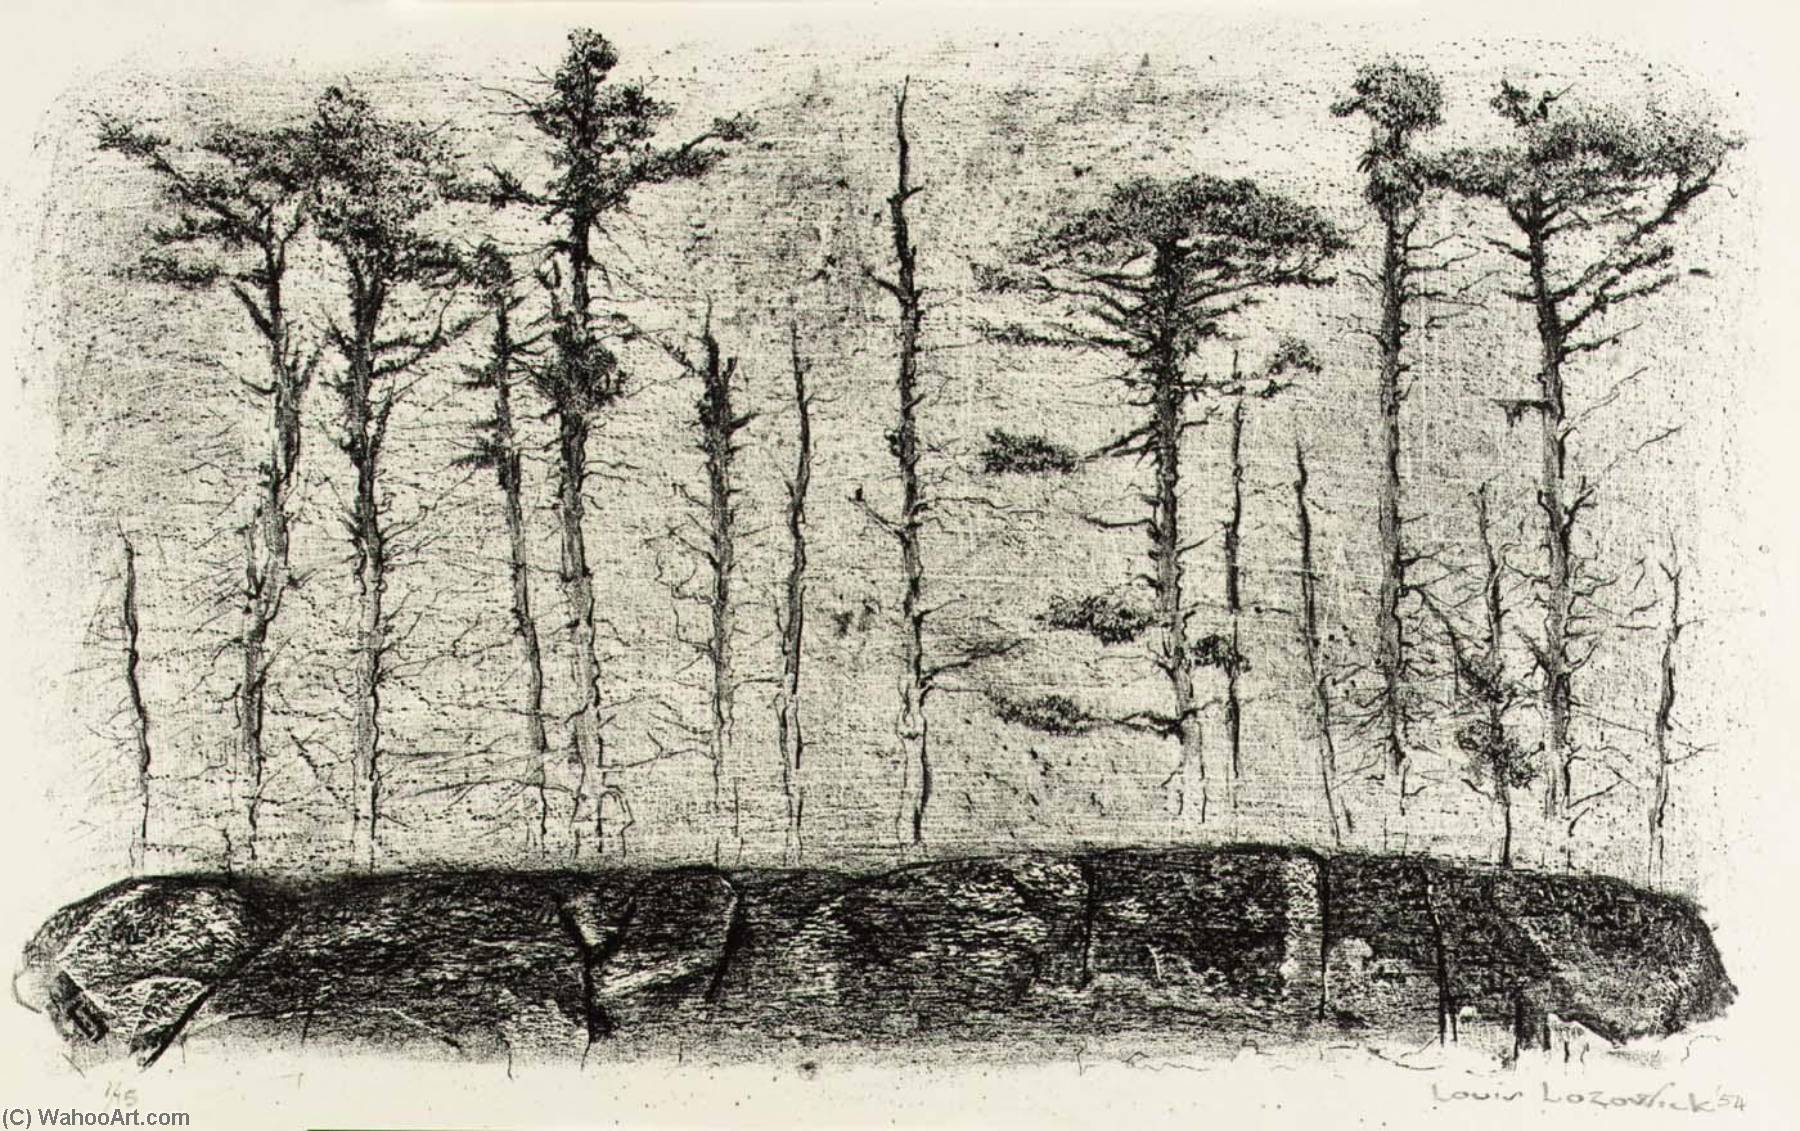 WikiOO.org - Encyclopedia of Fine Arts - Malba, Artwork Louis Lozowick - Coastline, Nova Scotia